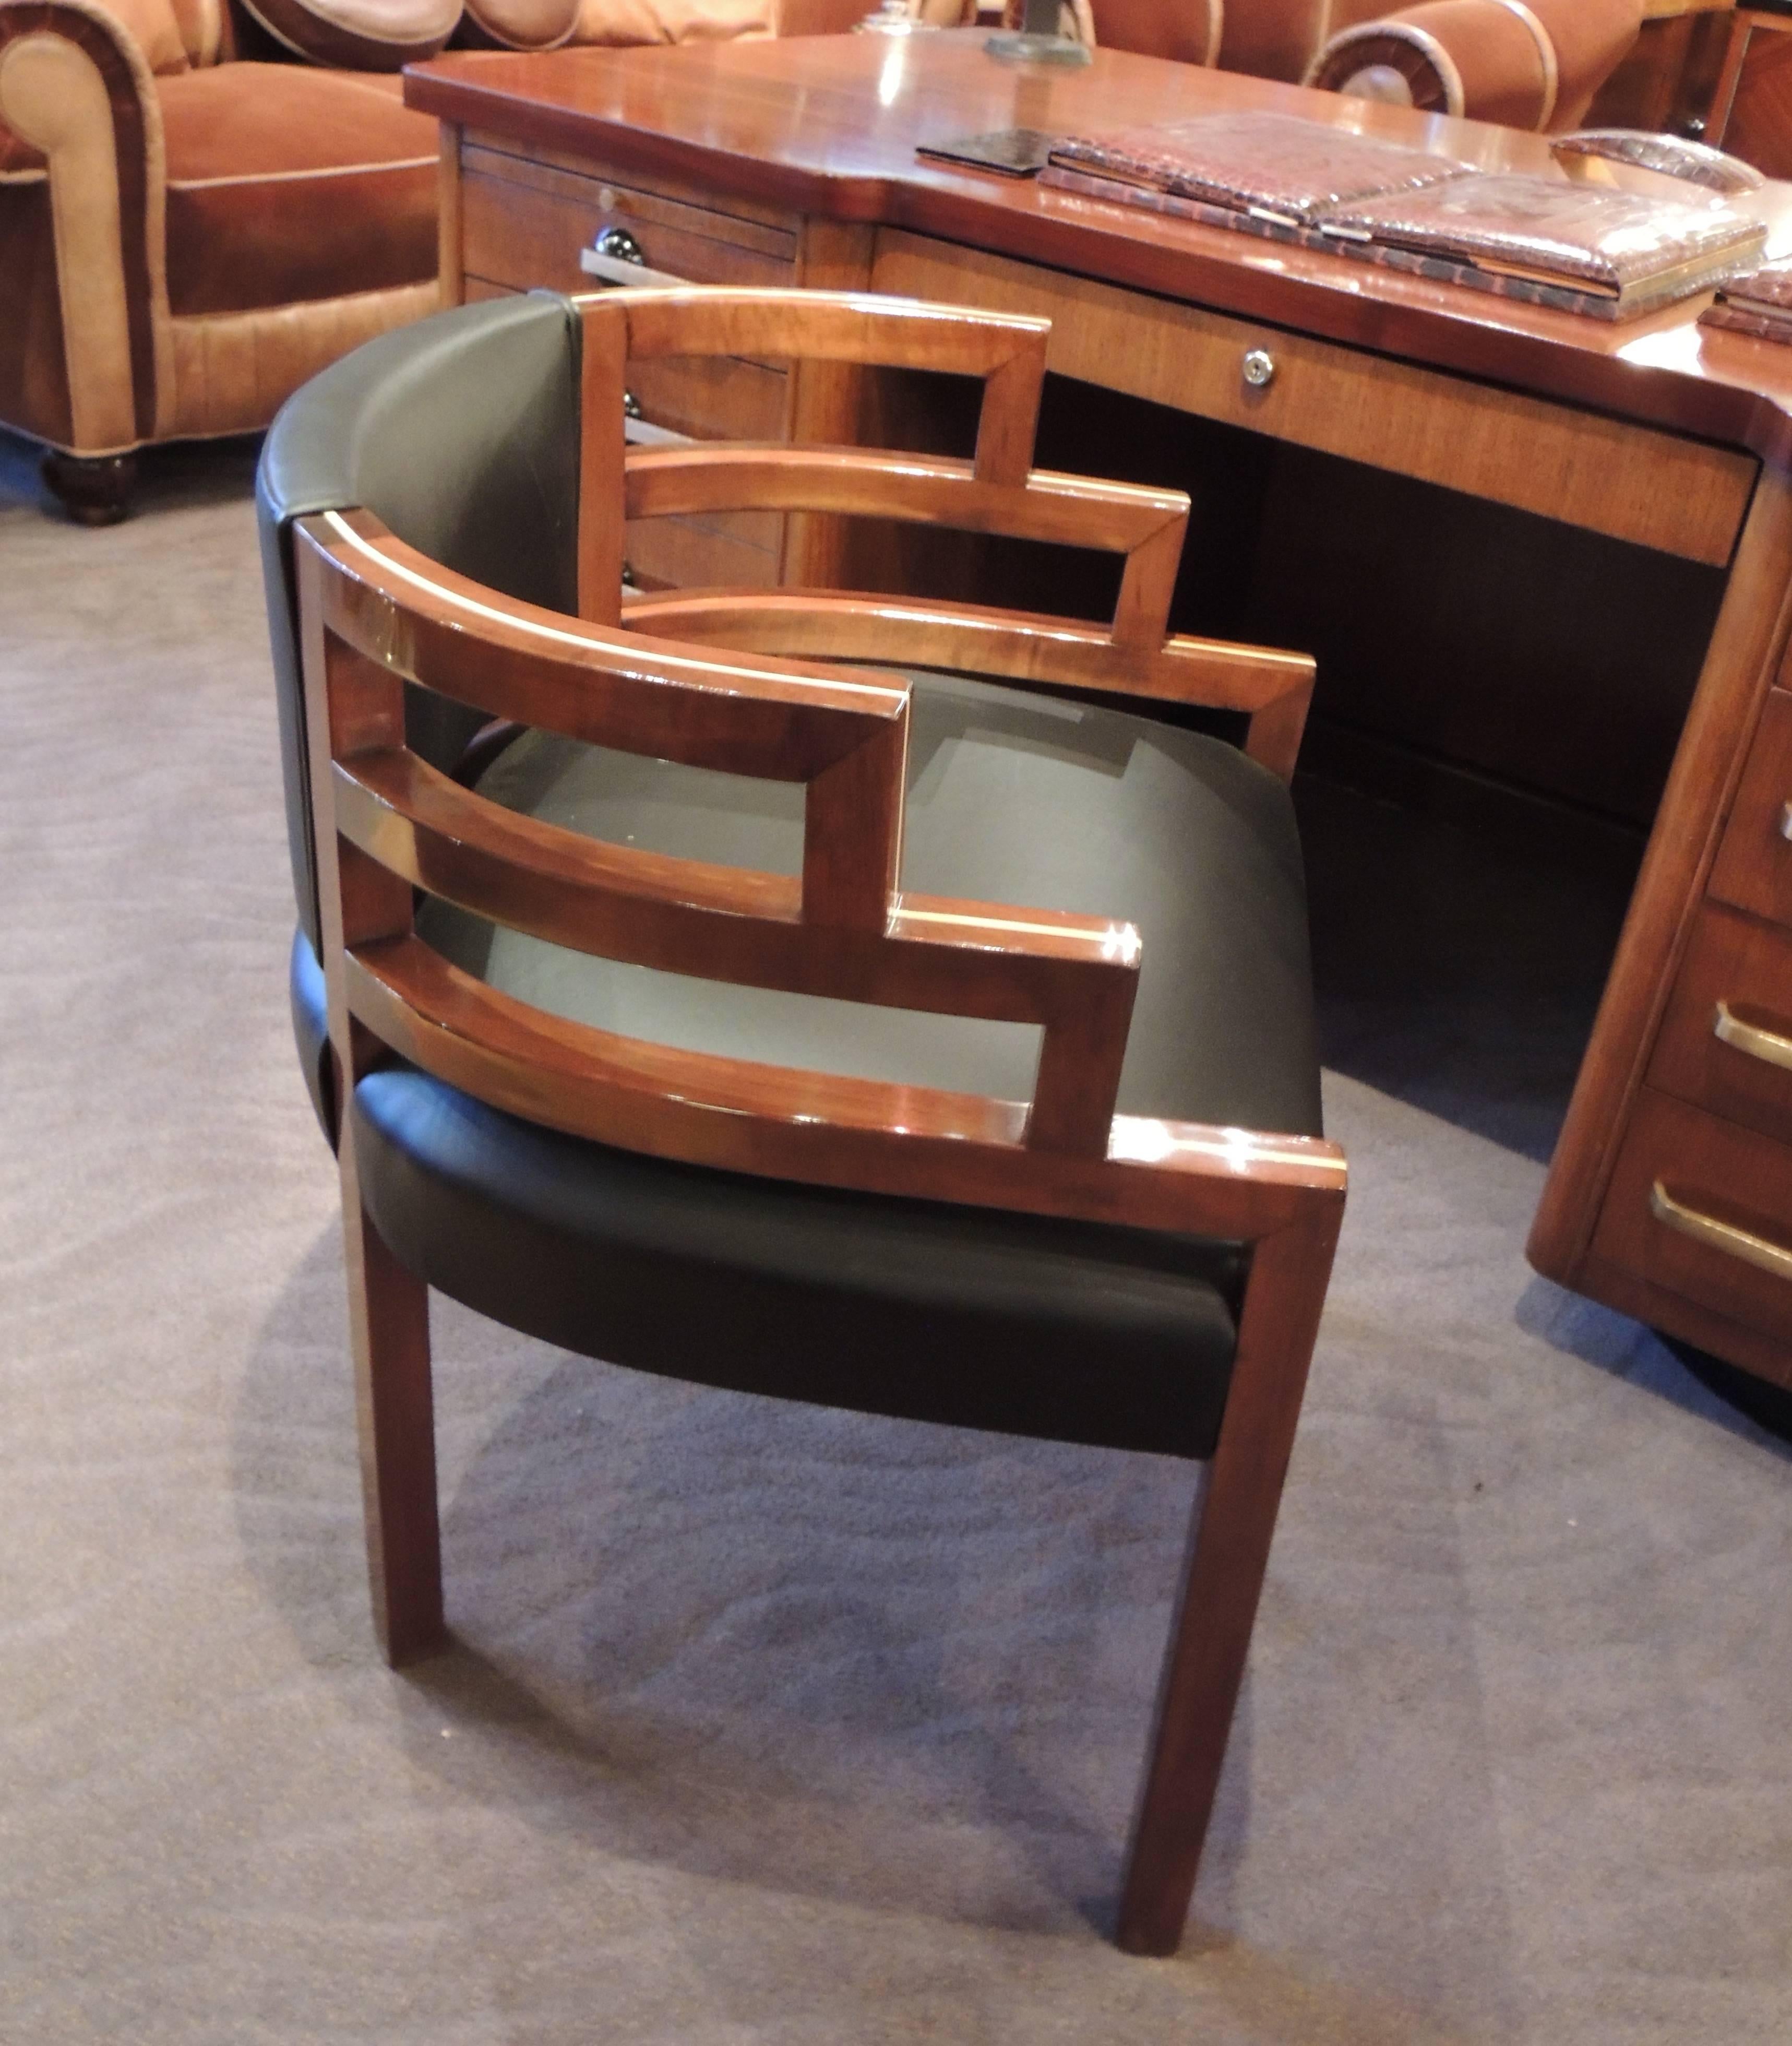 Ces chaises Art Déco dans le style de KEM Weber ont été fabriquées sur mesure exclusivement pour la collection Art Déco. Ils combinent un design moderniste en forme d'escalier avec un confort et un rembourrage qui améliorent l'original. Les cadres